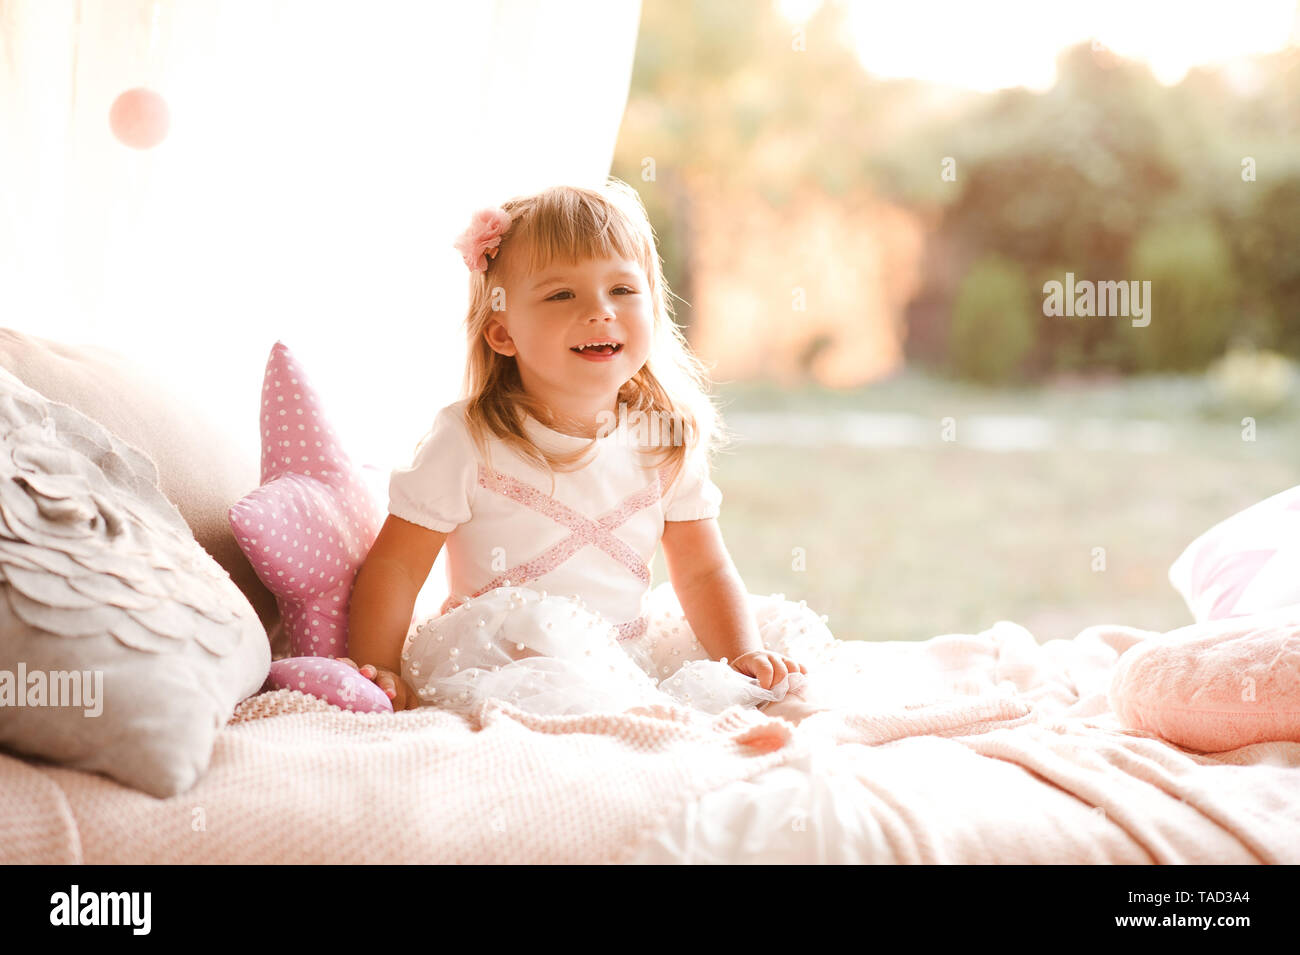 Rires De Bebe Fille 1 2 Ans Robe Princesse Porter Assis Au Lit Avec Oreiller Fete D Anniversaire L Enfance Photo Stock Alamy